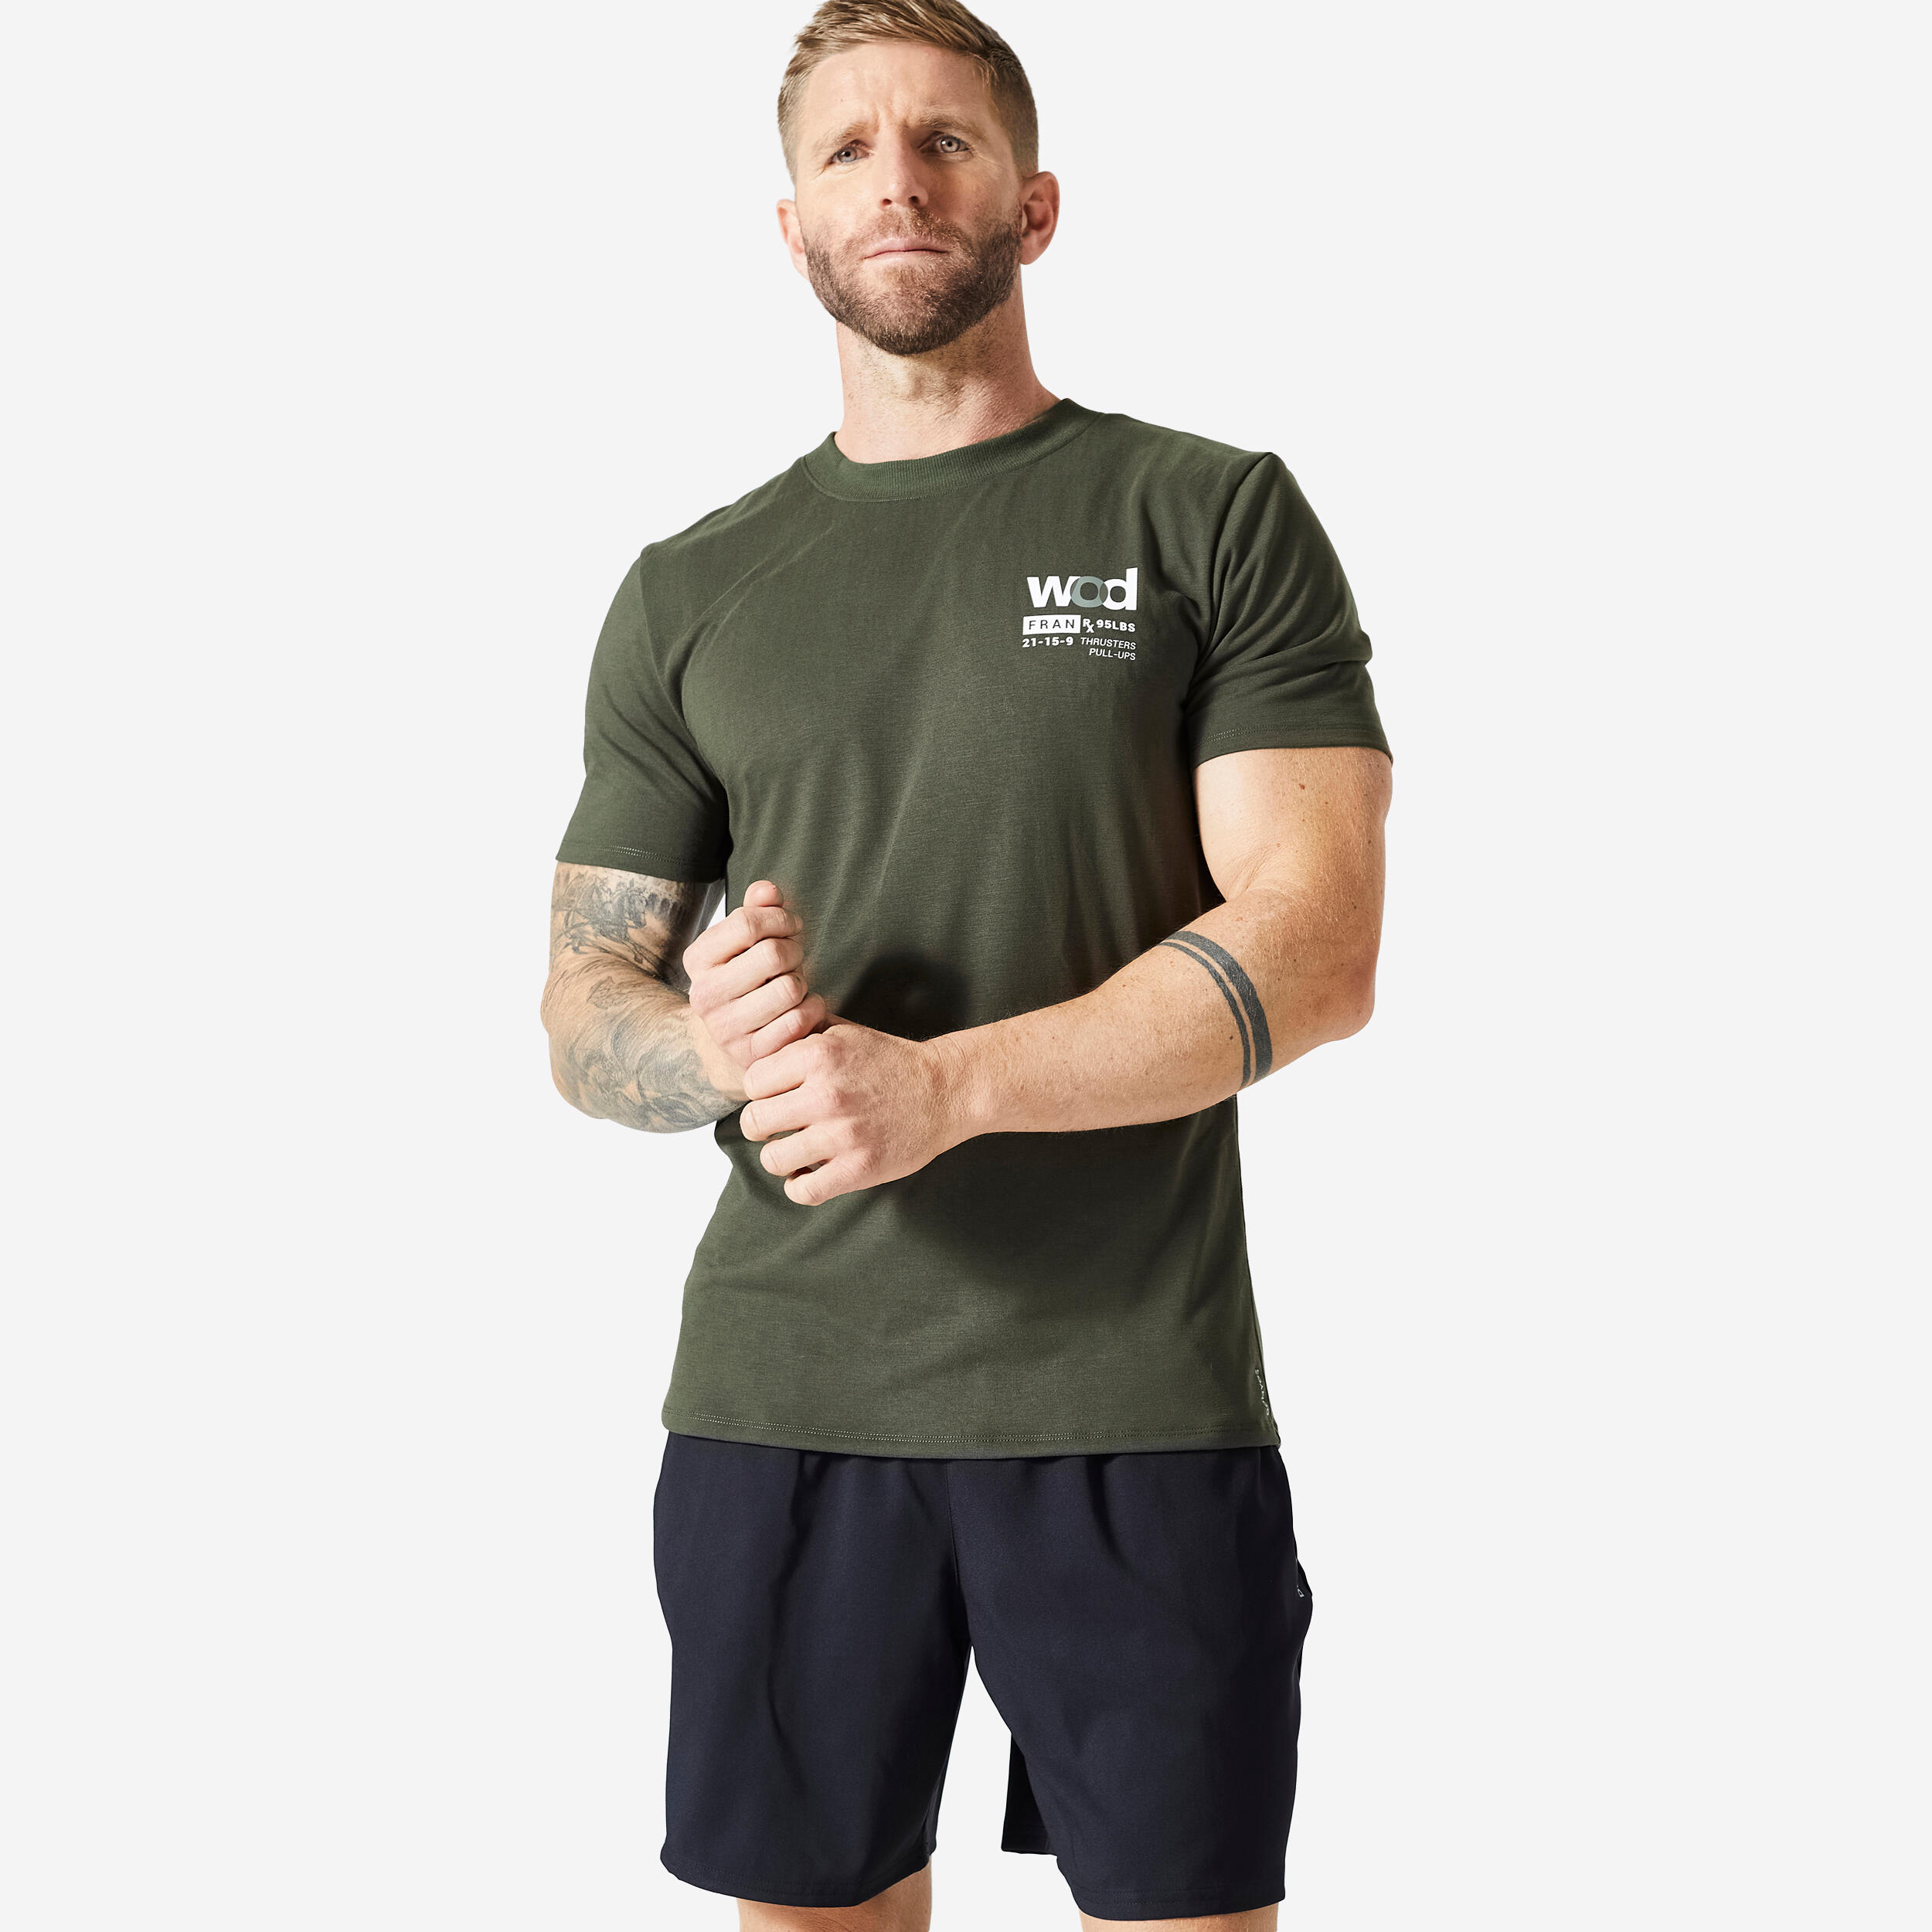 Decathlon | T-shirt uomo palestra slim fit traspirante verde militare |  Domyos